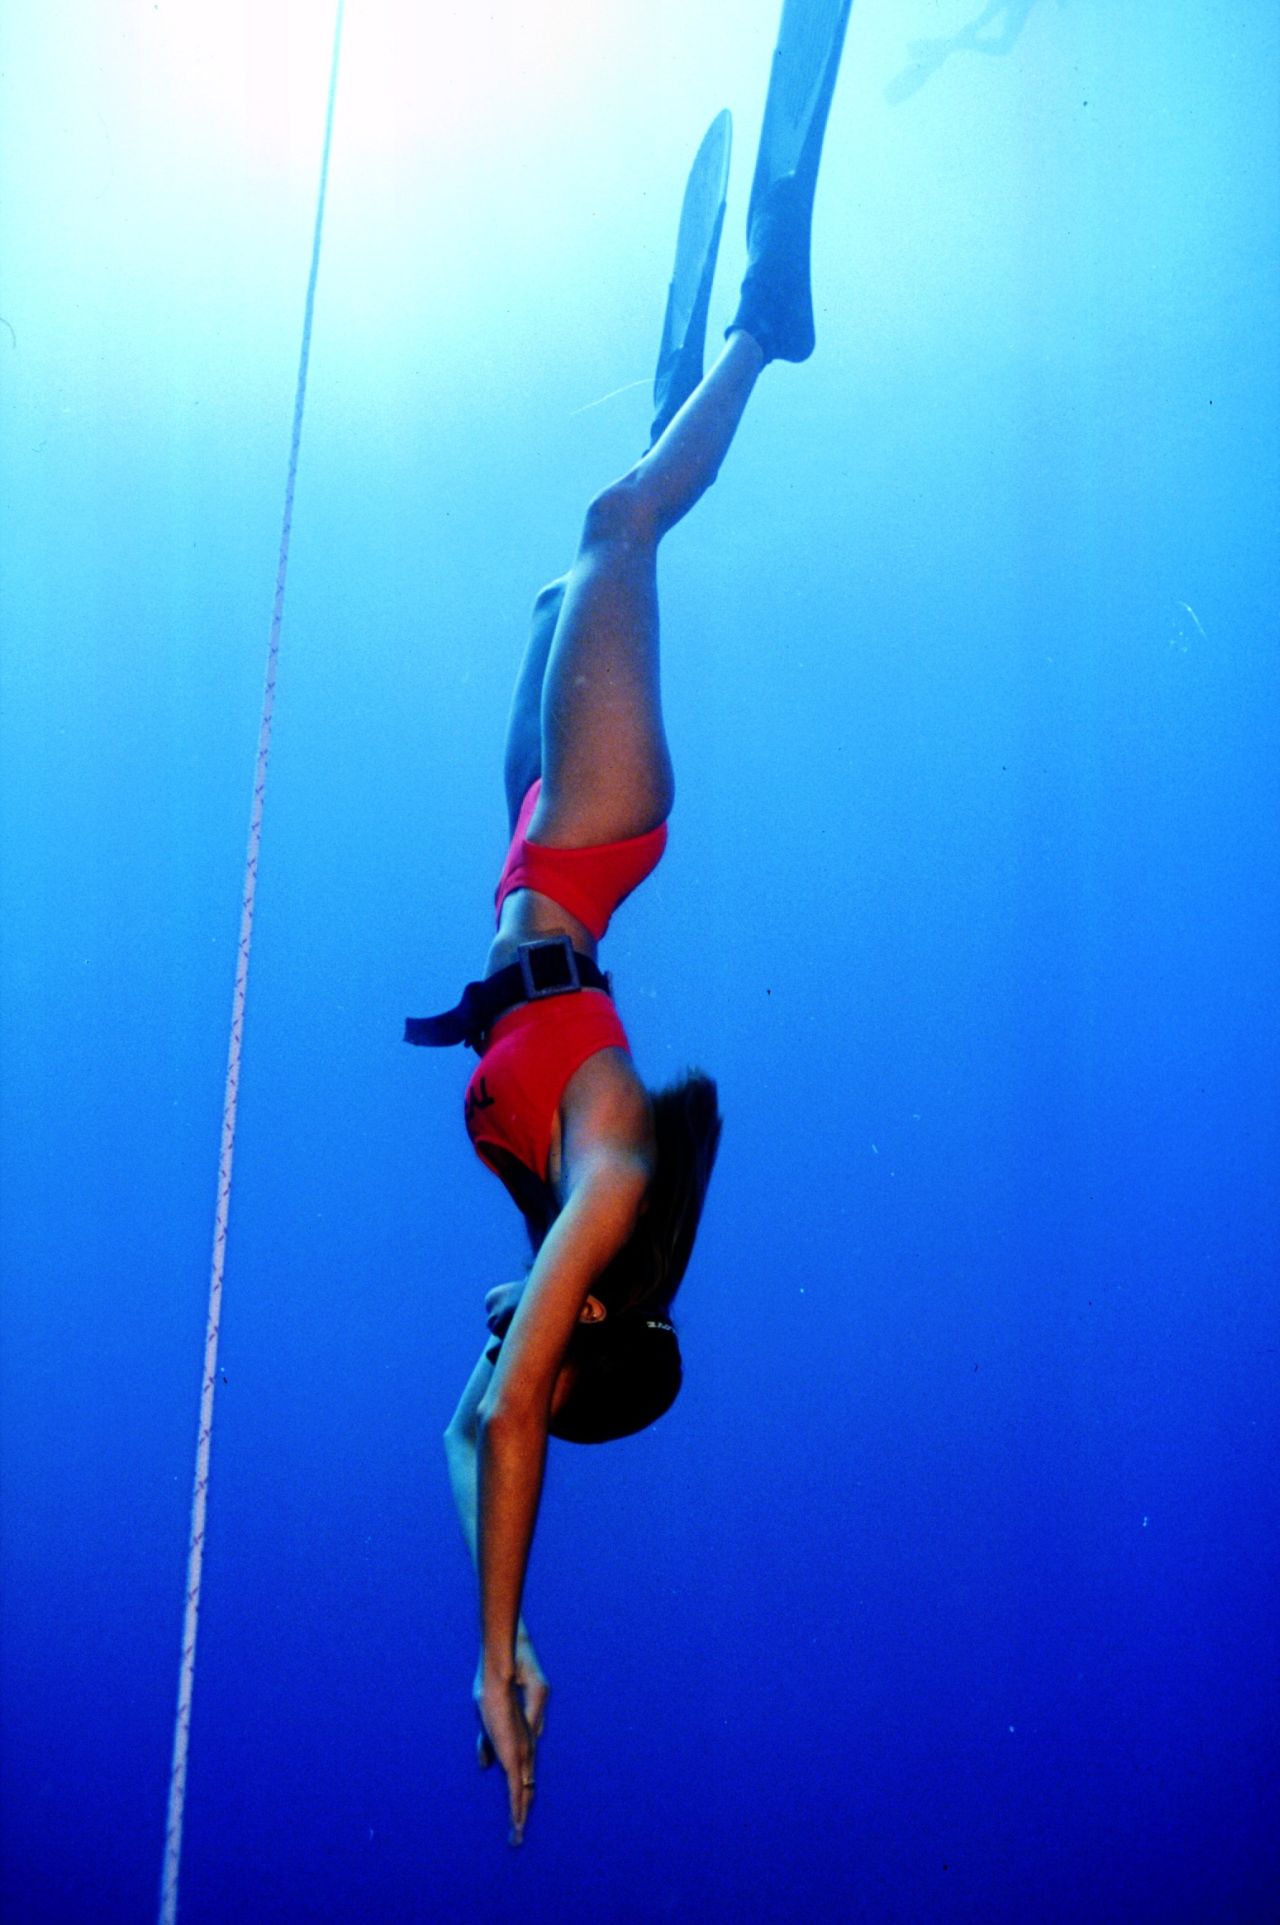 Freediving - nurkowanie na wstrzymanym oddechu